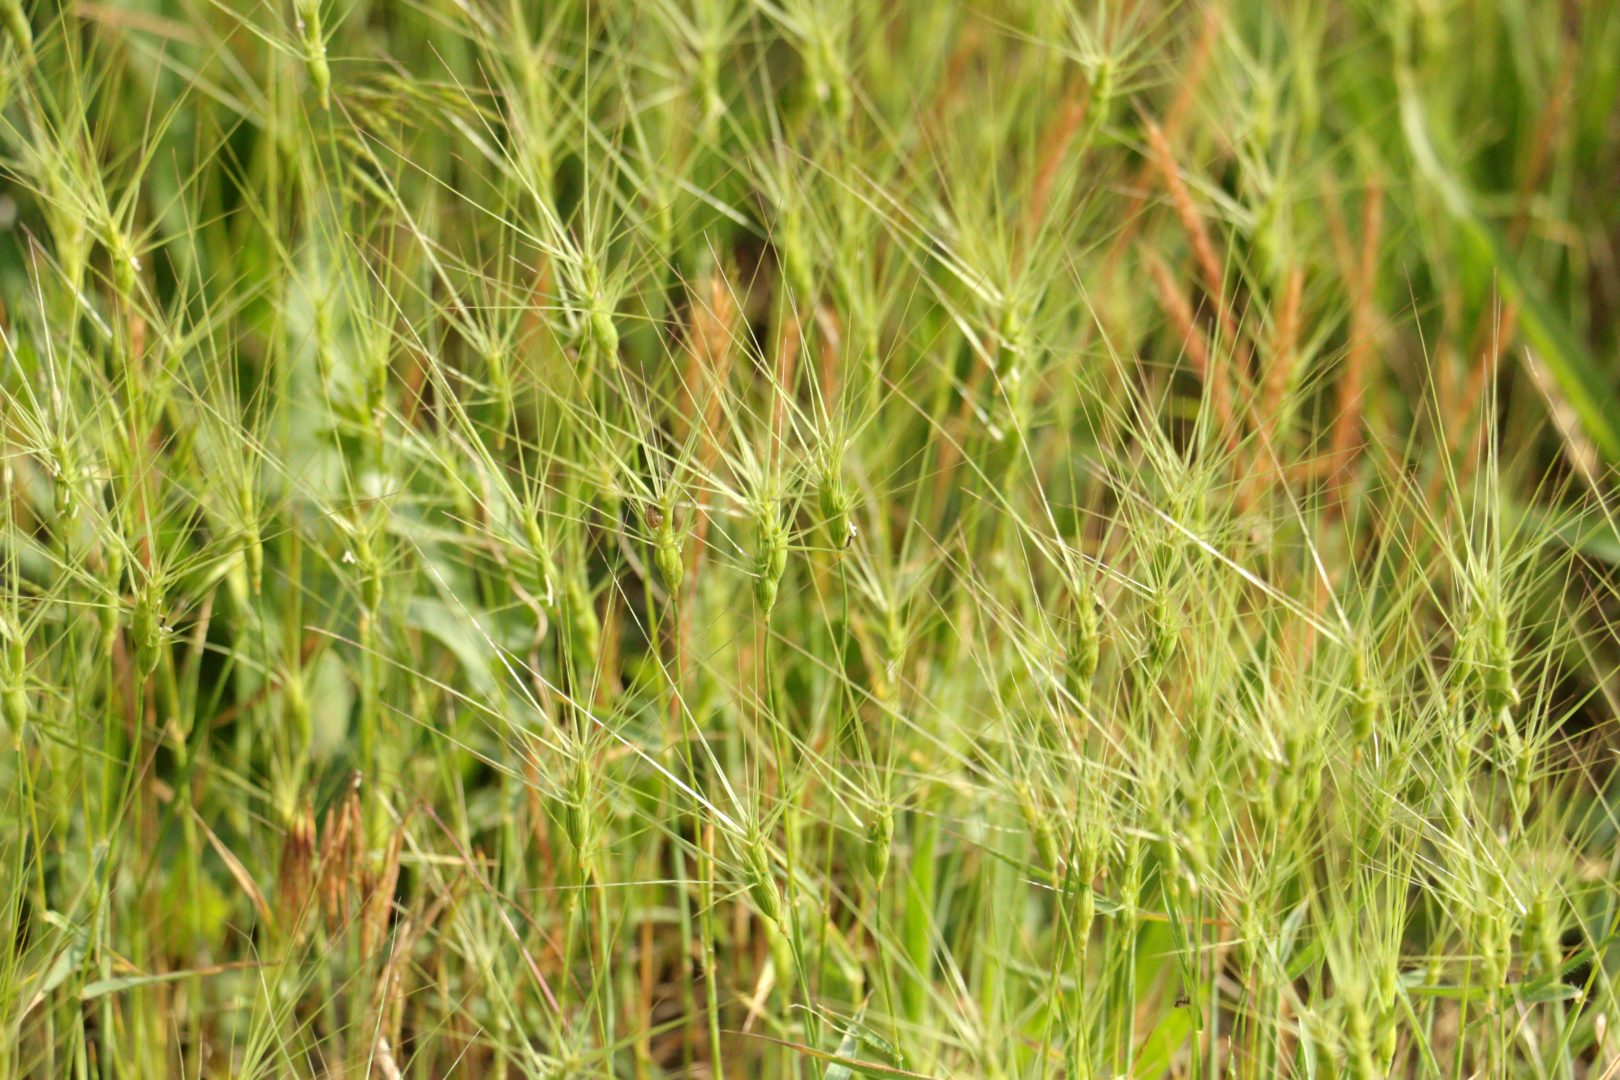 Трава с колосьями похожими на звездочки - эгилопс трёхдюймовый